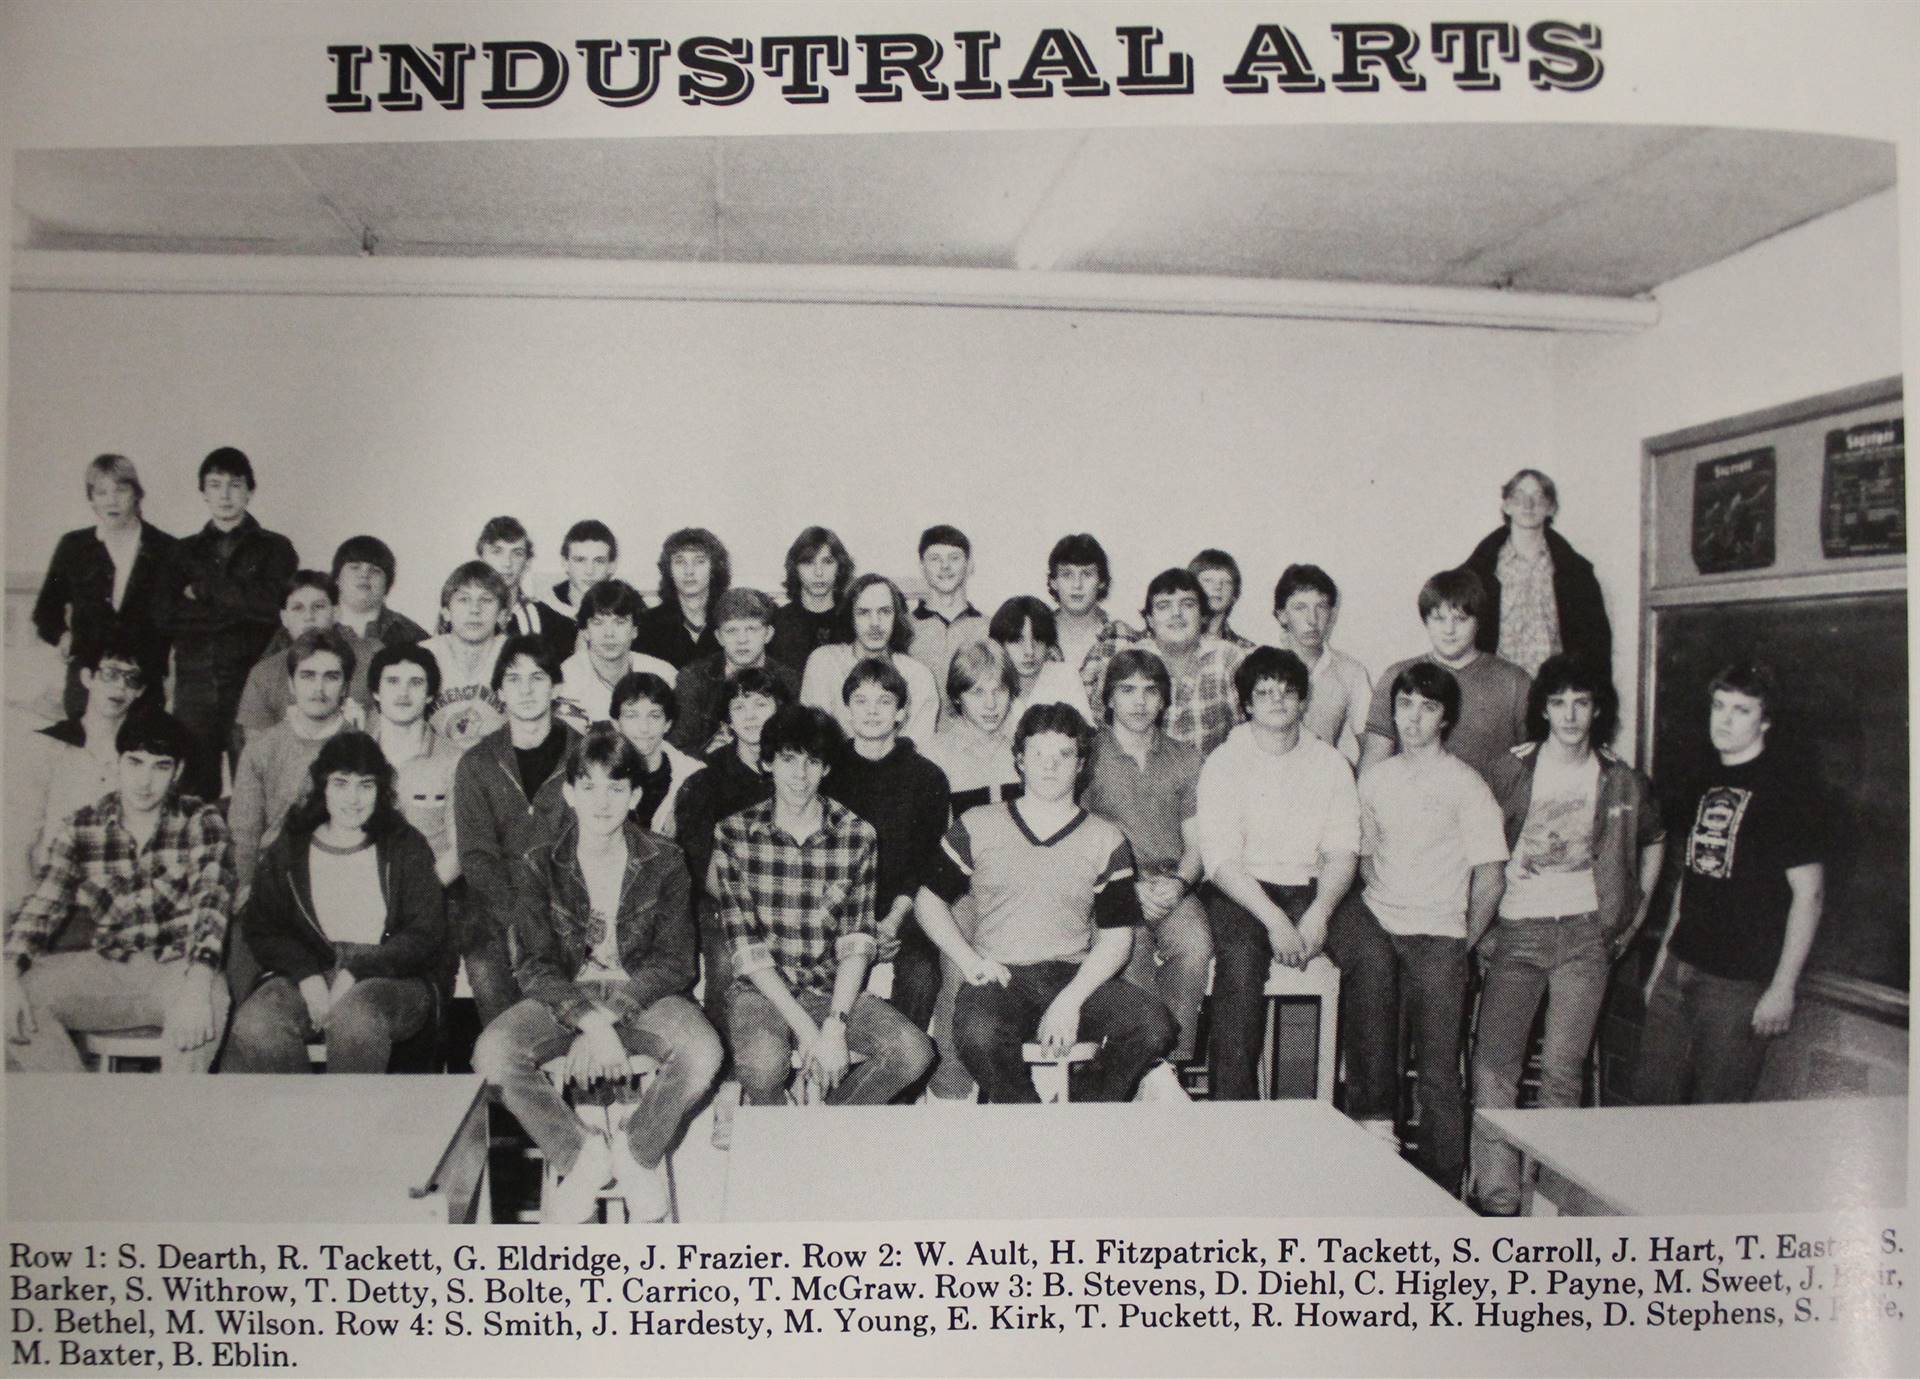 1986 Industrial Arts